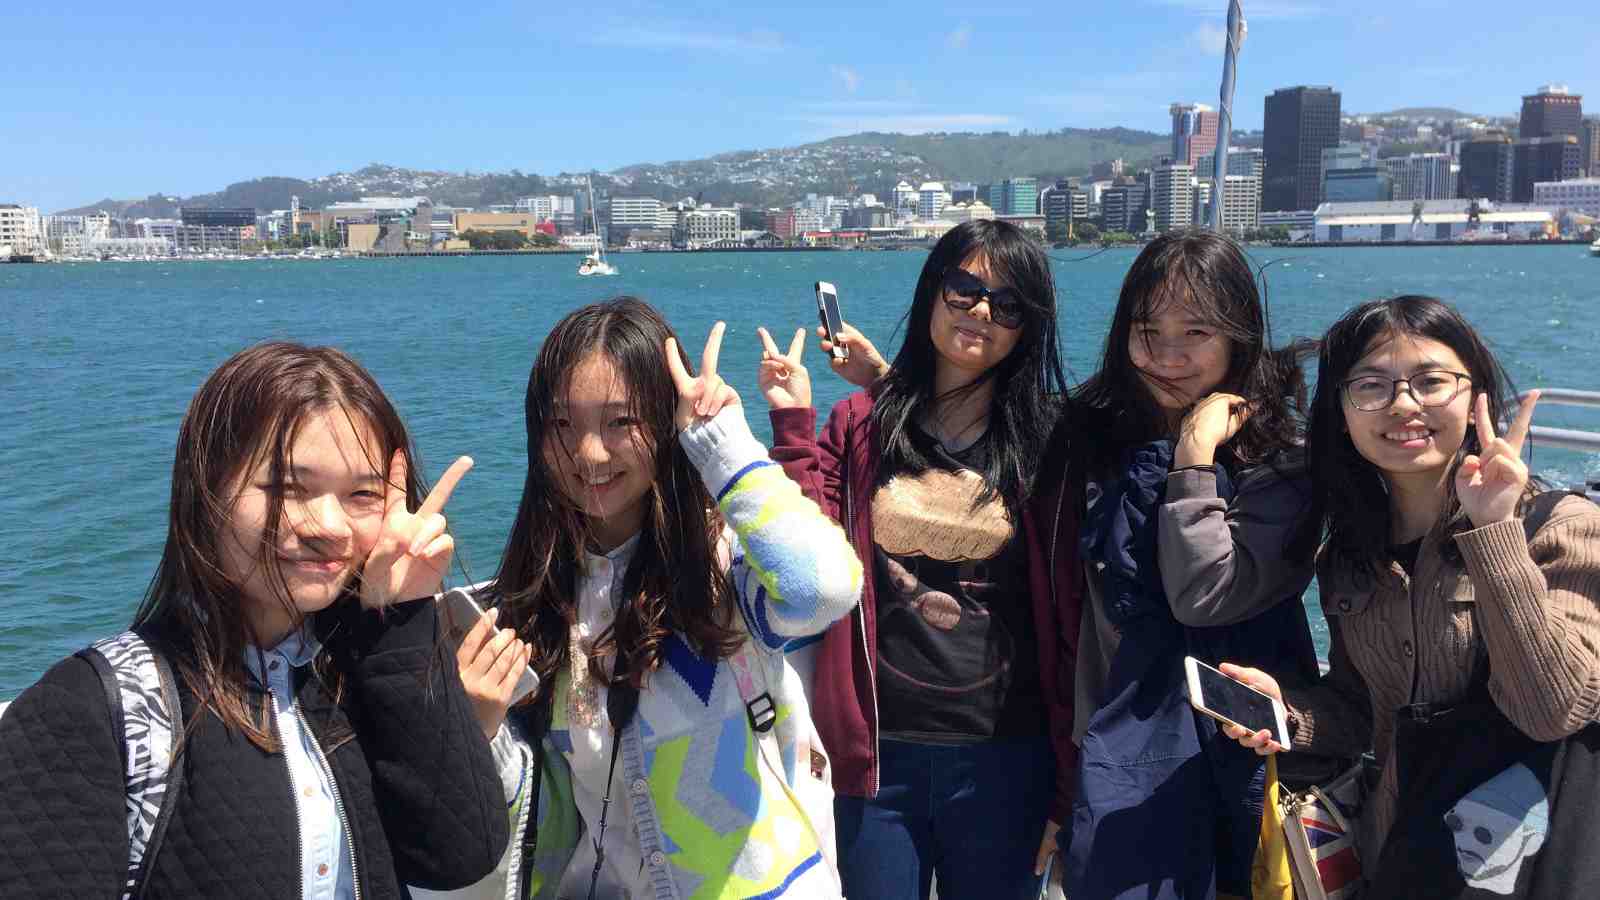 Sinh viên quốc tế đến từ các nước châu Á đóng góp một phần quan trọng cho nền kinh tế của New Zealand - Ảnh: Wgtn NZ